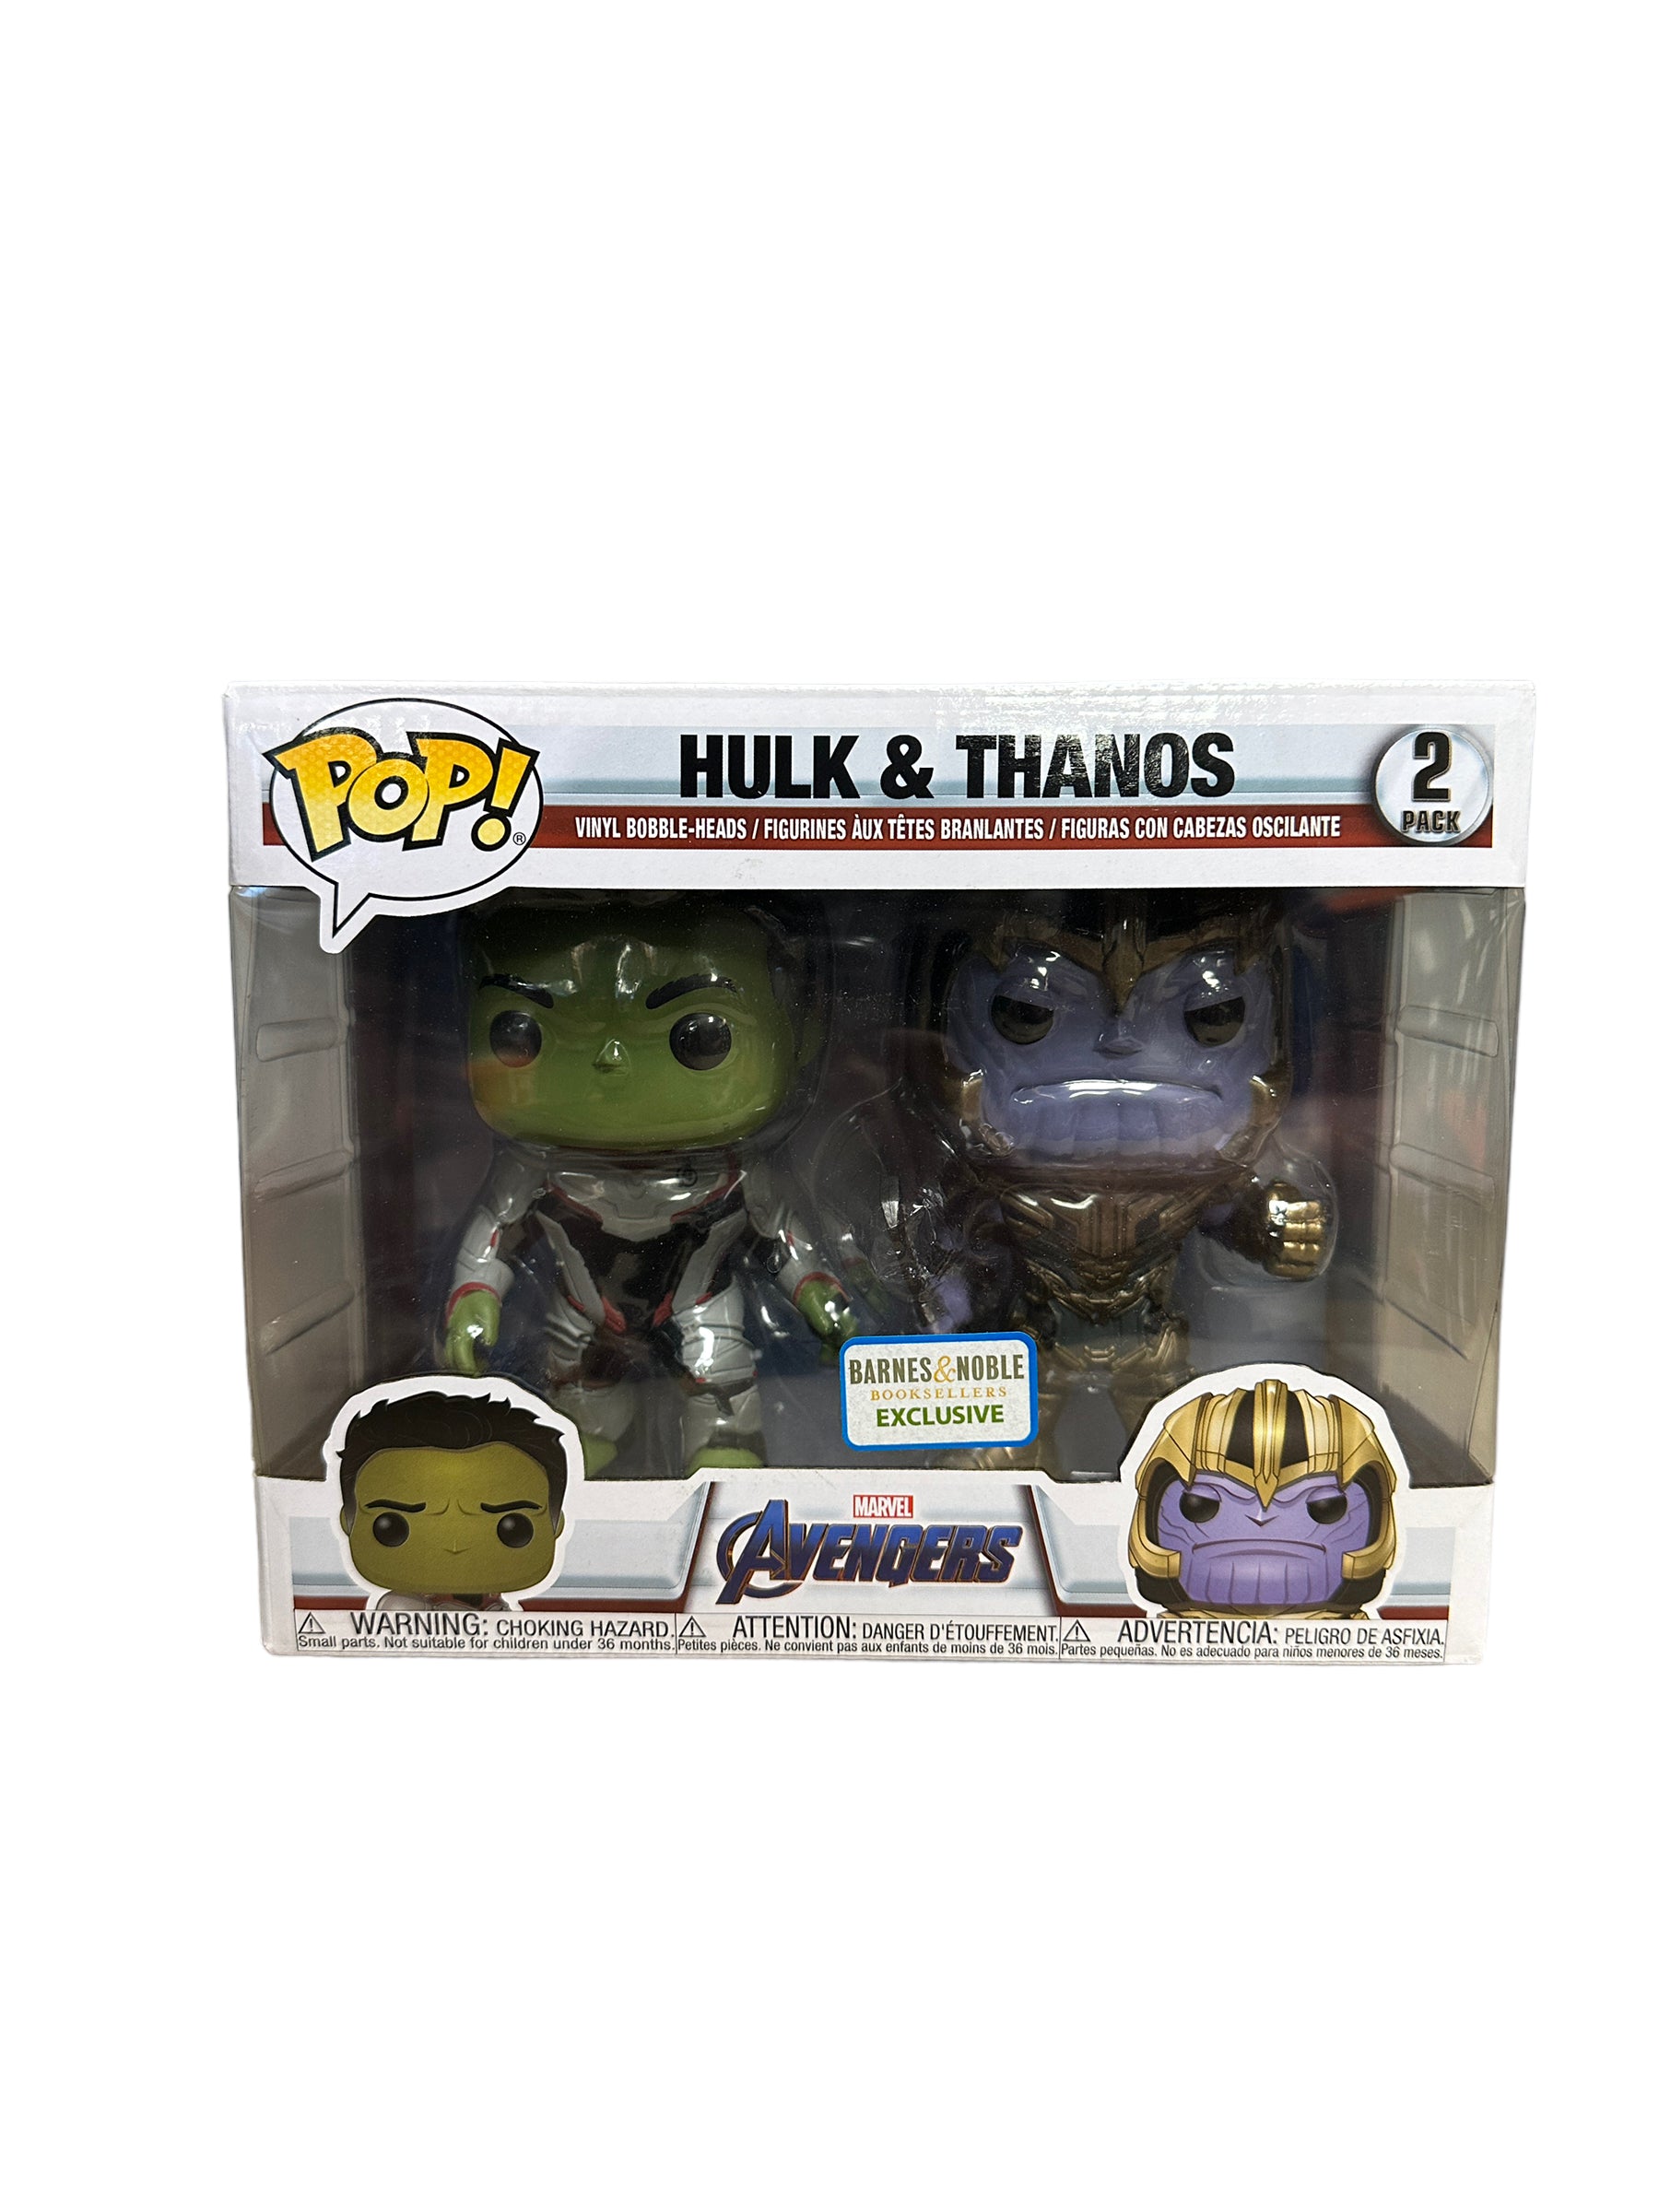 Hulk Funko Pop! Avengers Endgame